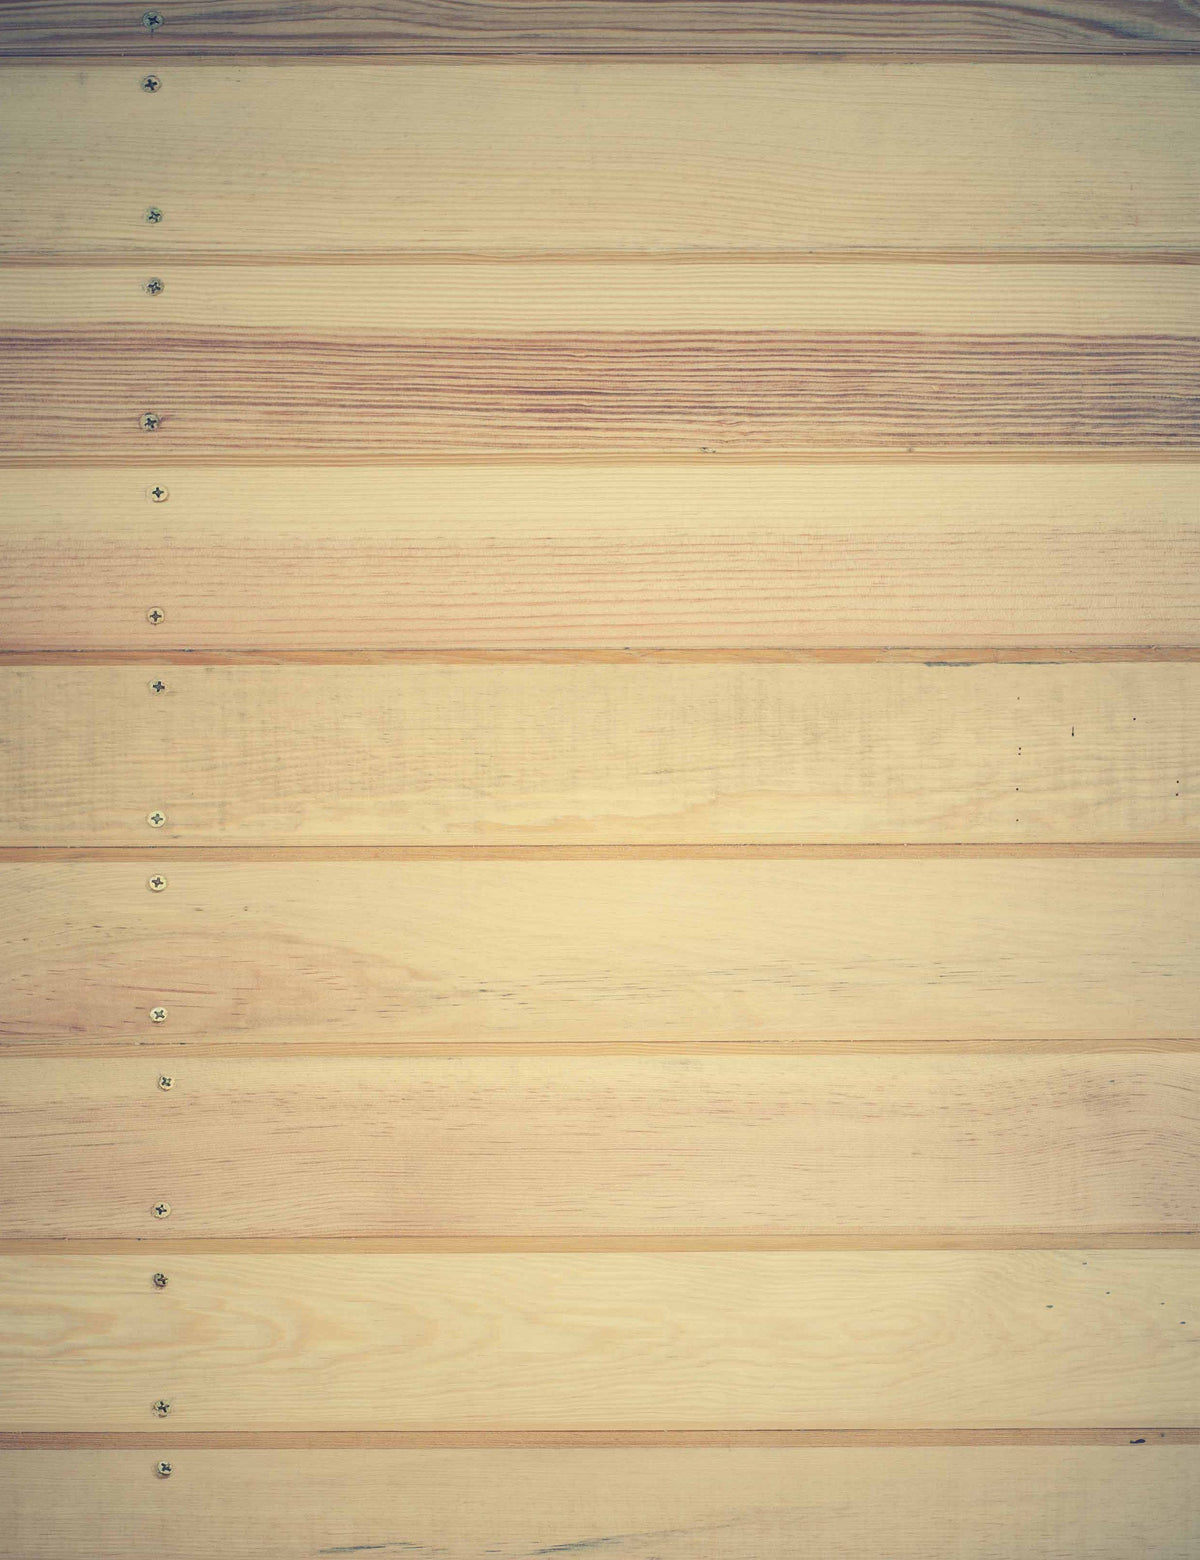 Natural Wood Floor Mat Texture With Nails Backdrop Shopbackdrop